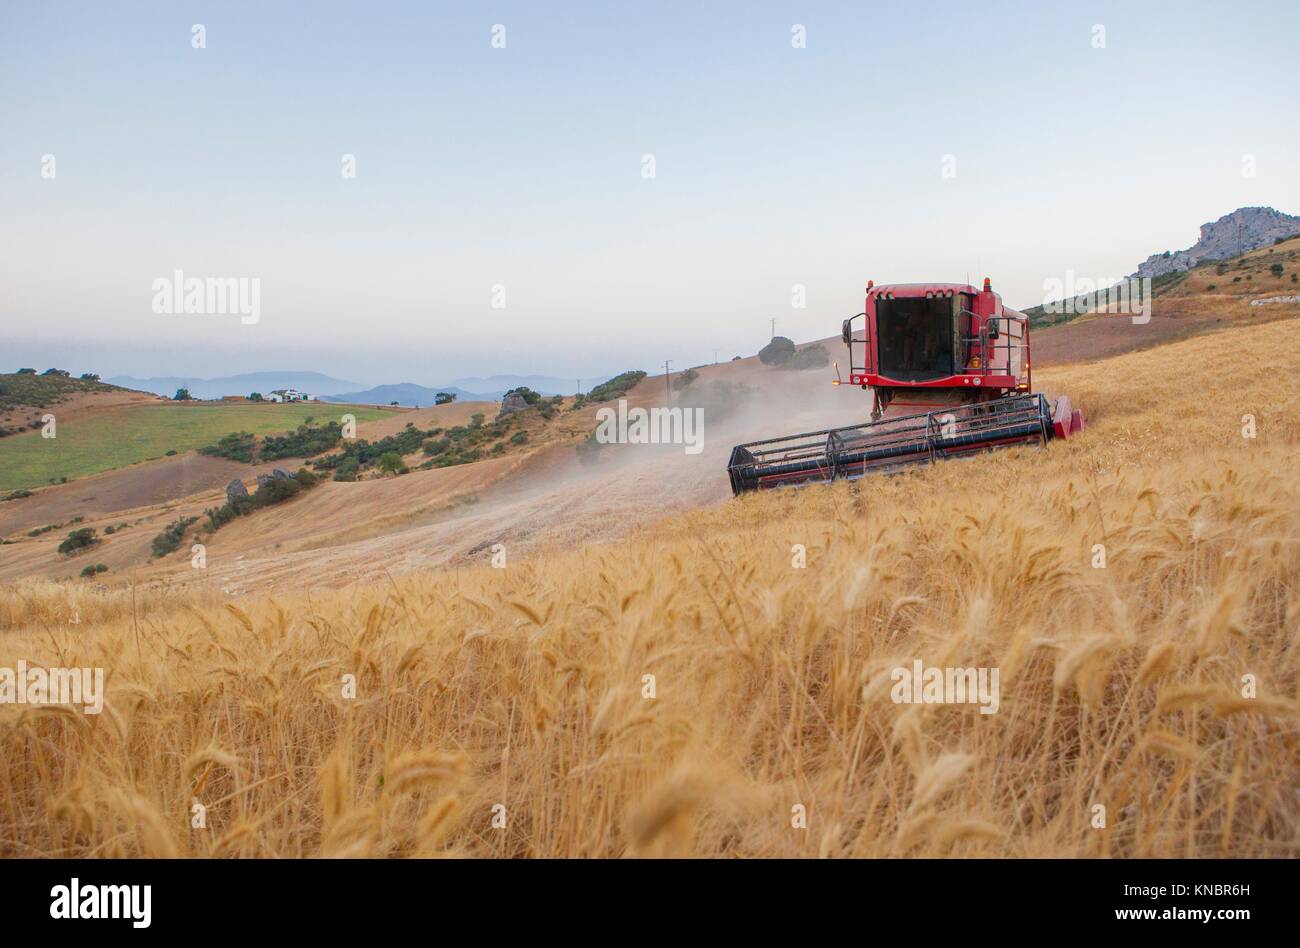 Collecte d'ensileuse à blé de montagne de Antequera, Malaga, Espagne. Combiner la machine à tourner manœuvre. Banque D'Images